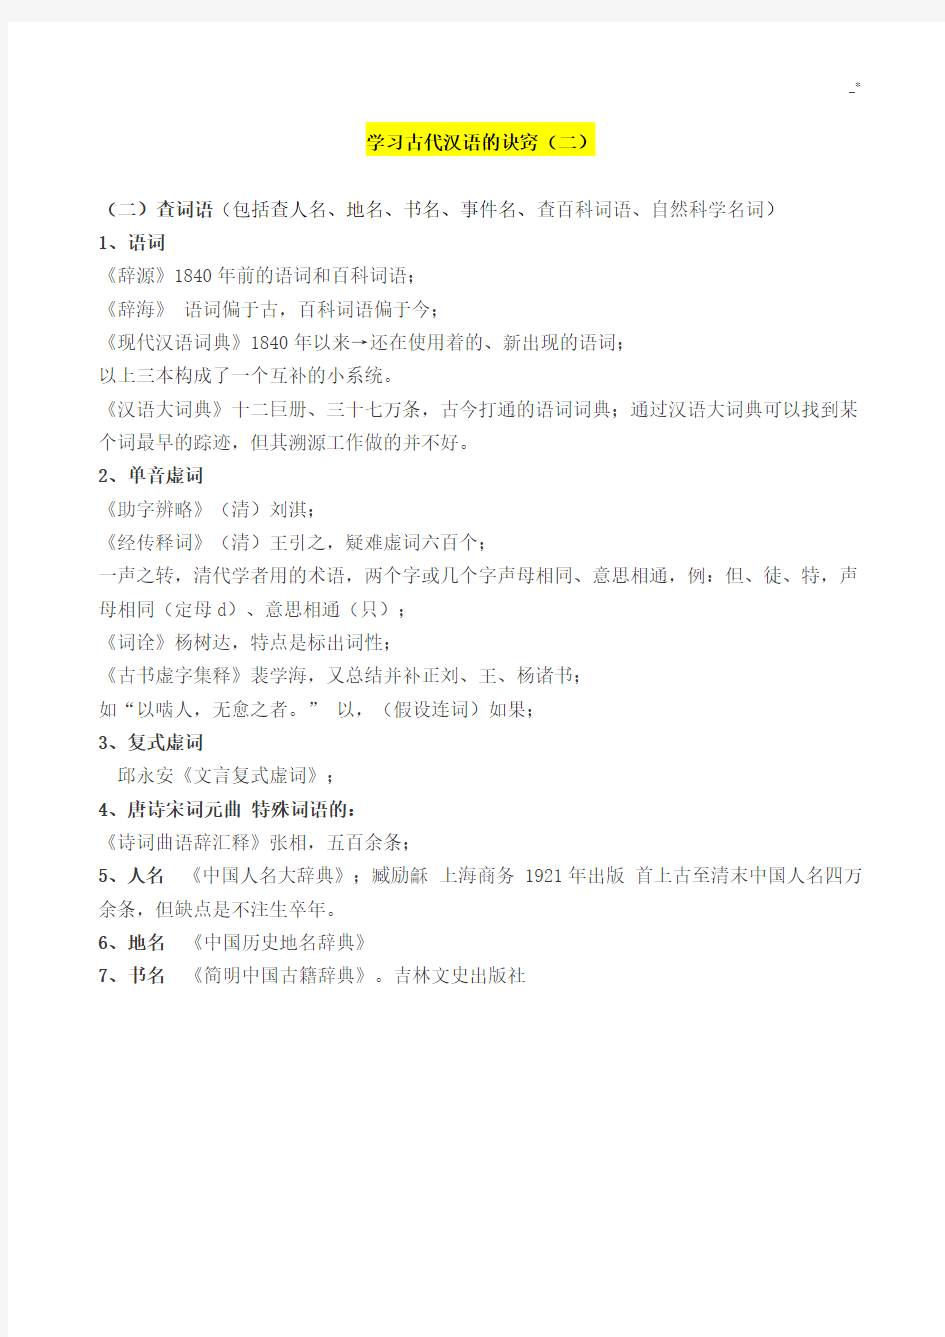 古代汉语《知识学习古代汉语的诀窍》(南京大学高小方)